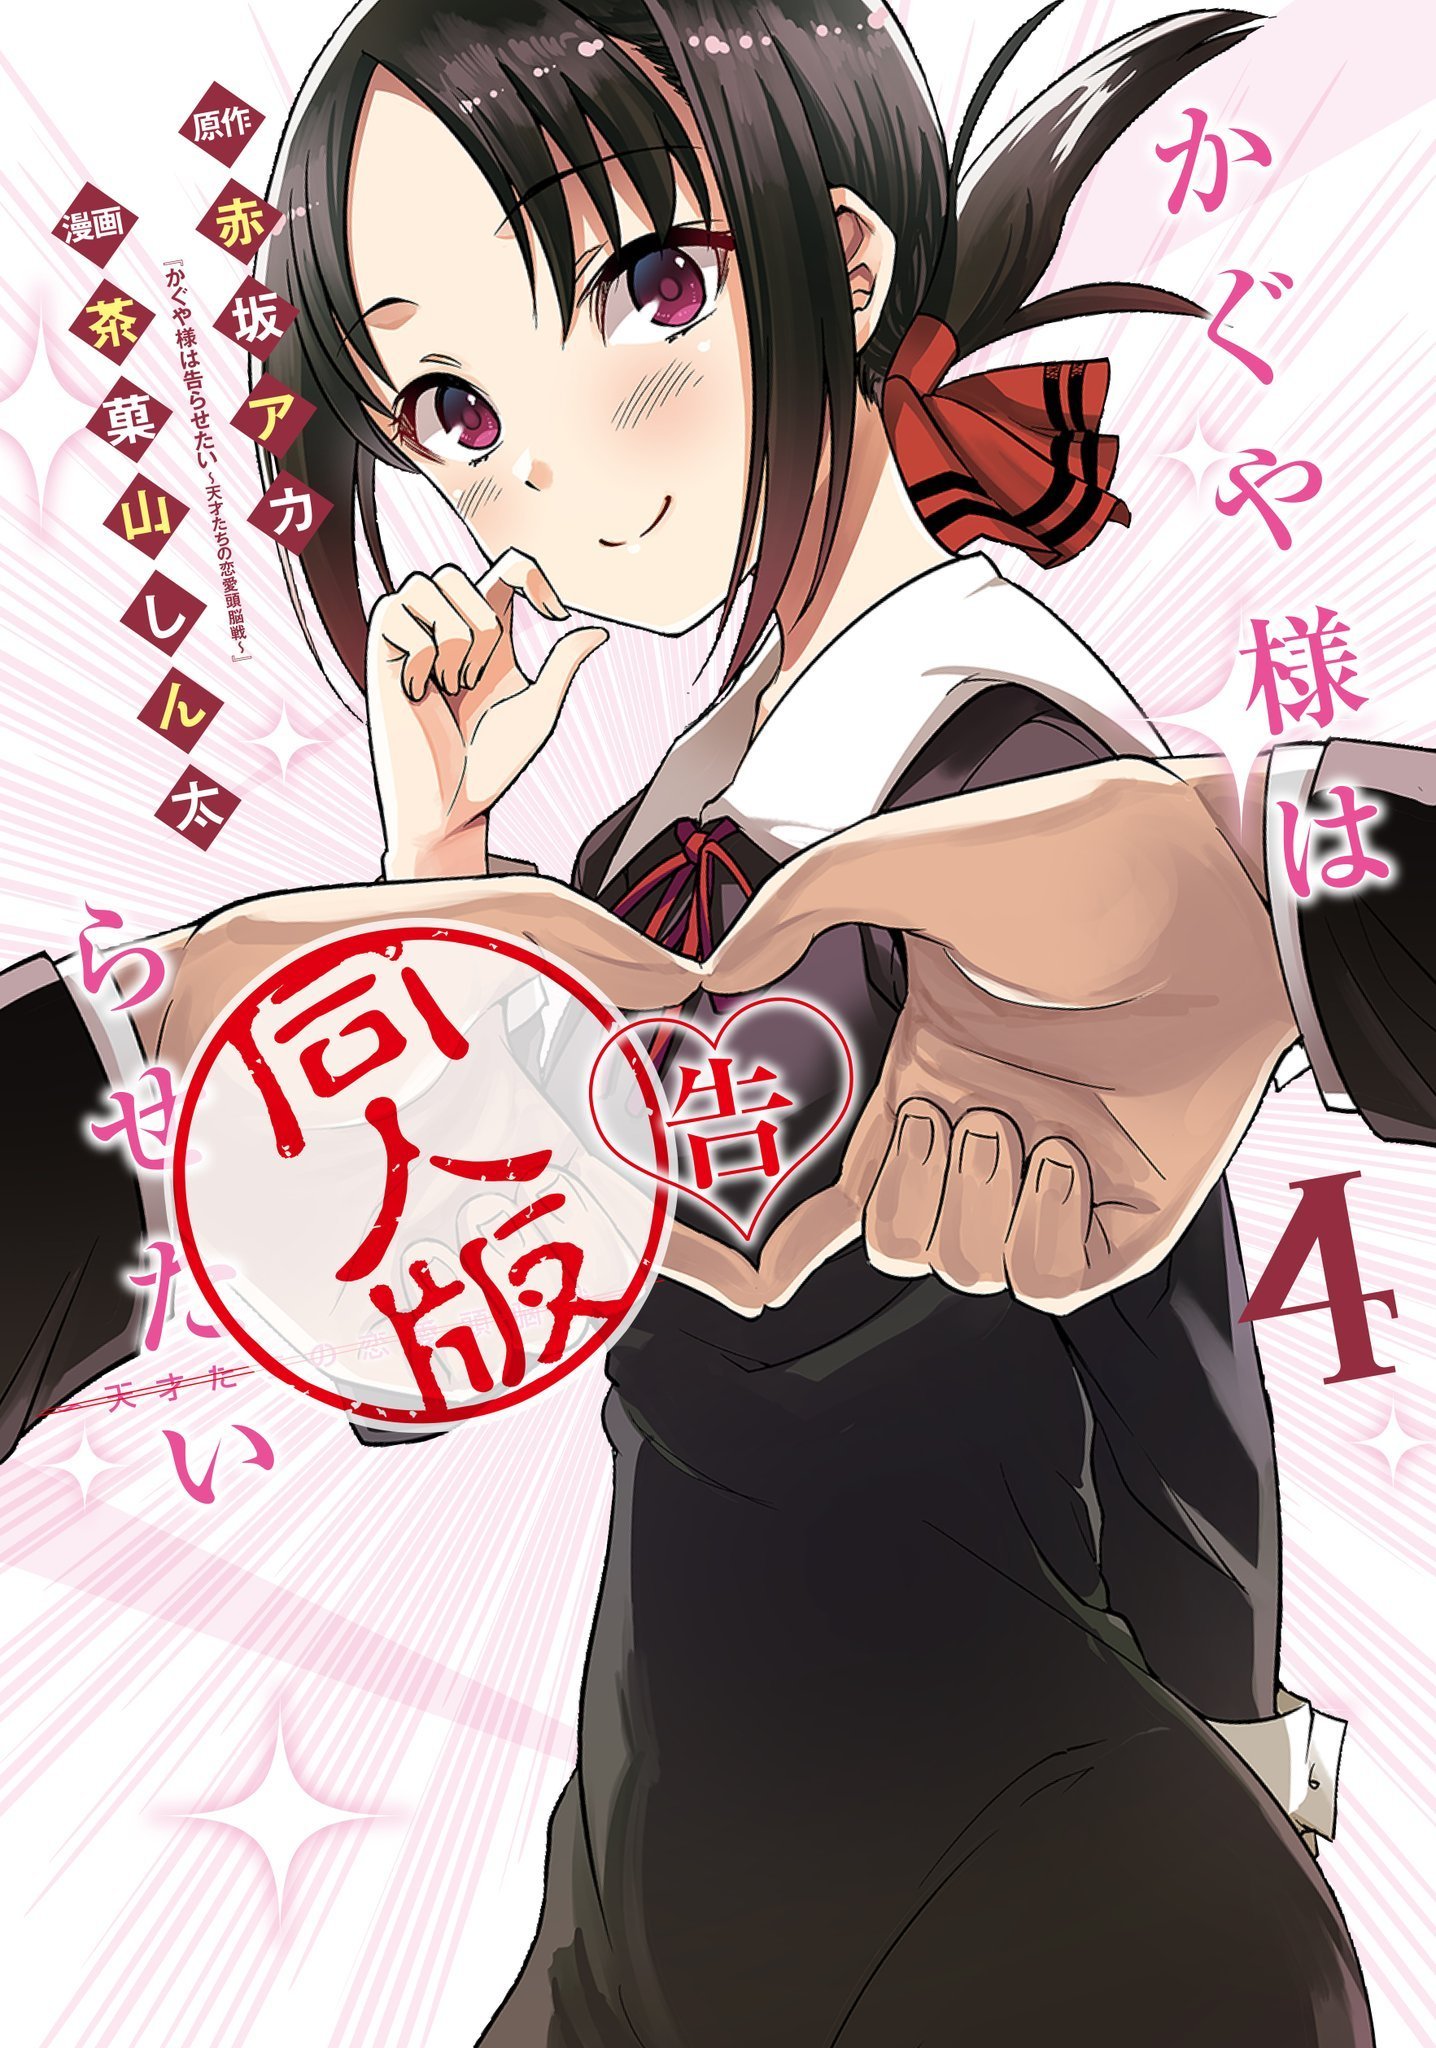 Kaguya-sama: Love is War Official Doujin